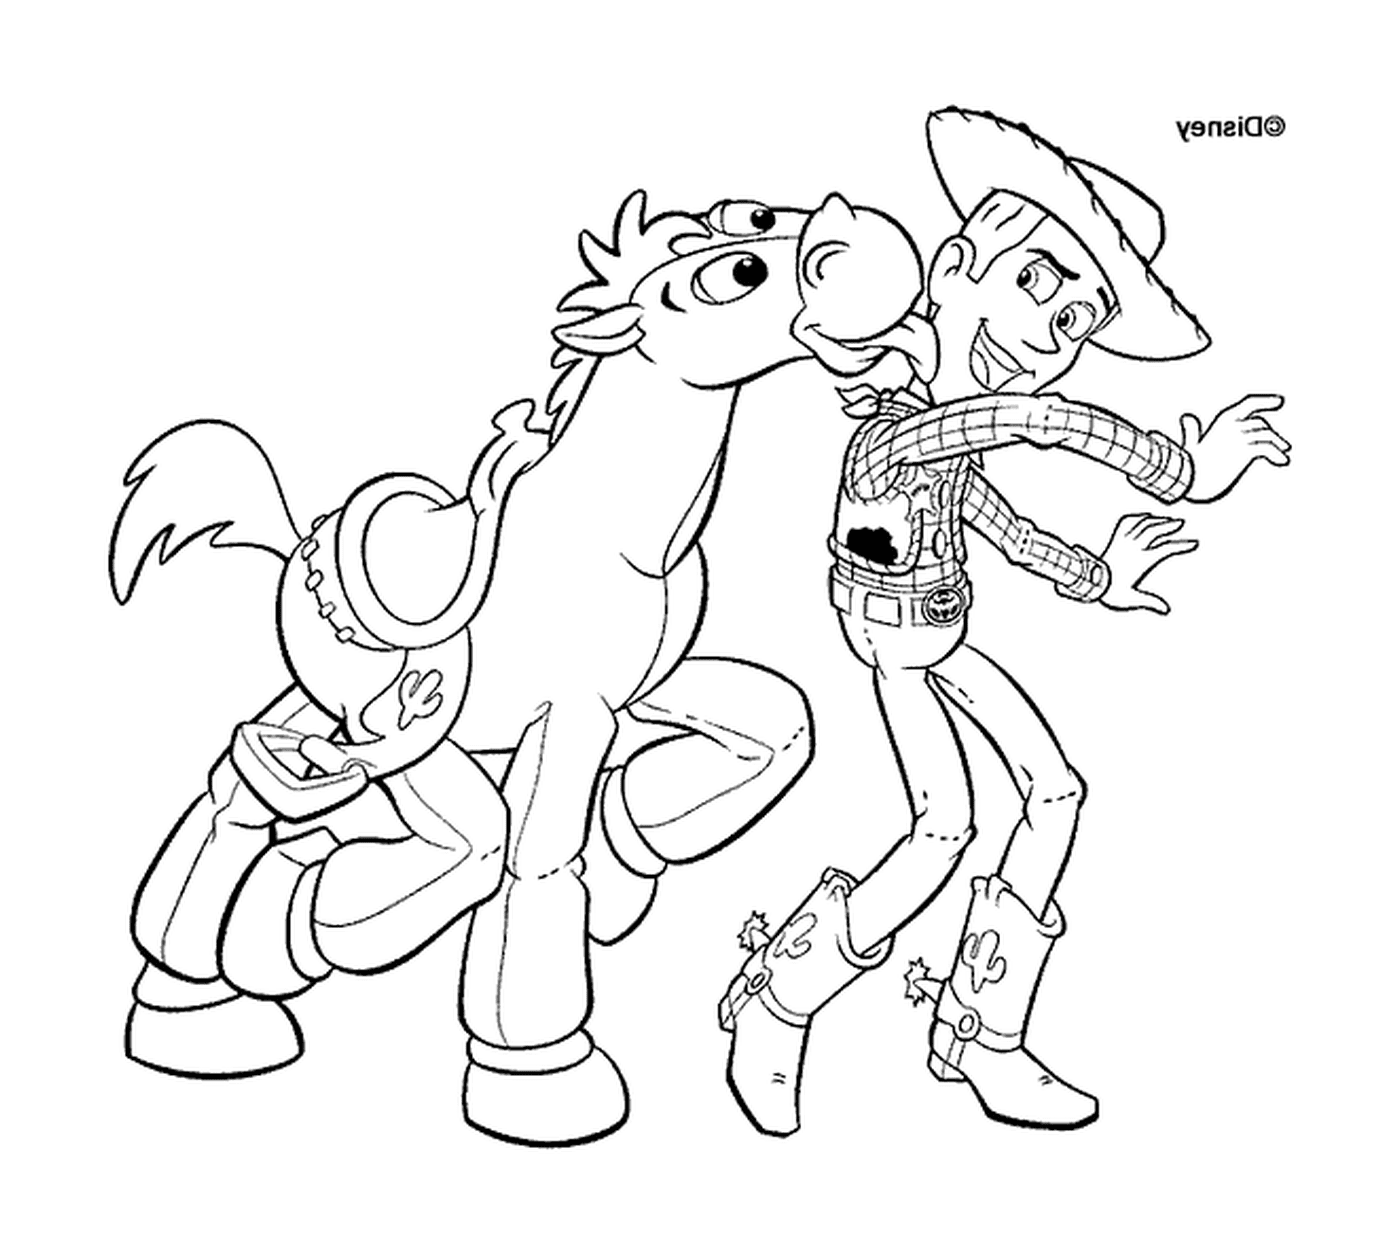  Woody y su caballo, dúo inseparable 